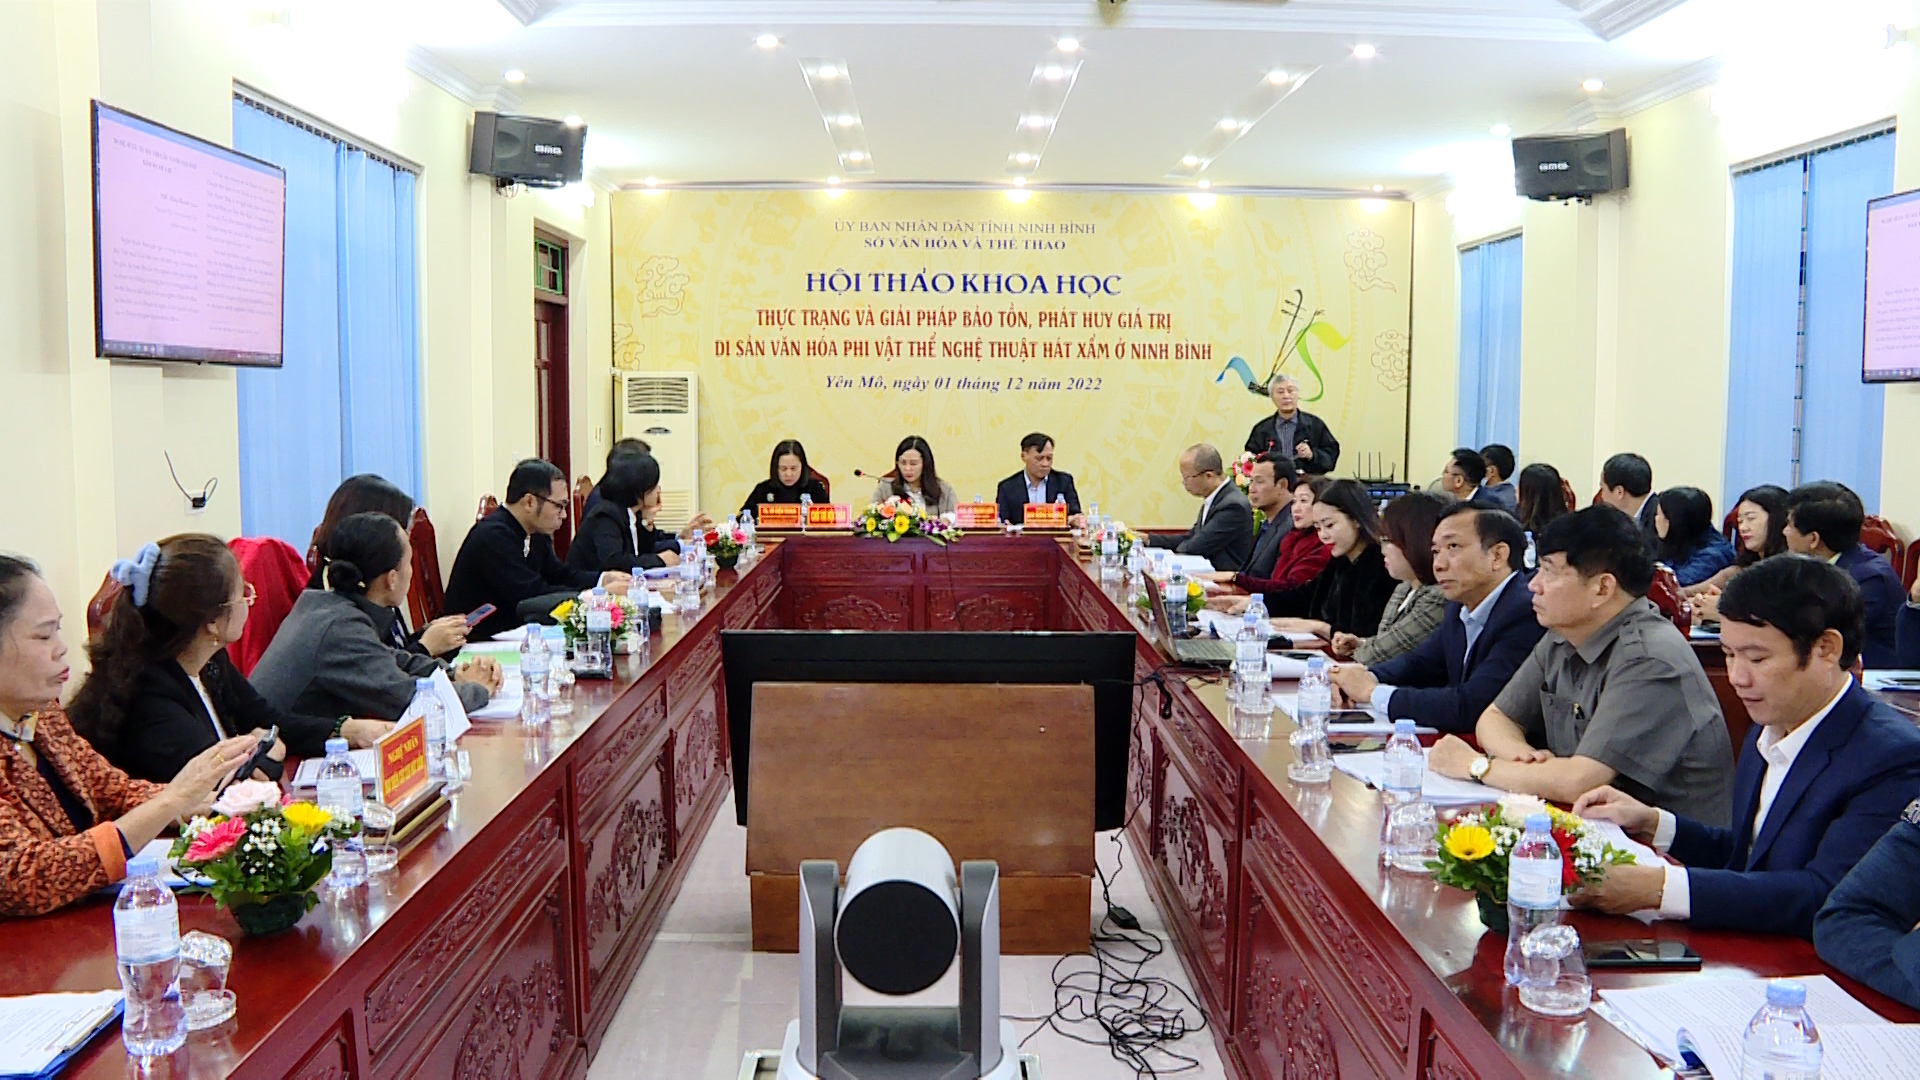 Hội thảo khoa học thực trạng và giải pháp bảo tồn, phát huy nghệ thuật hát Xẩm ở Ninh Bình - Ảnh 1.